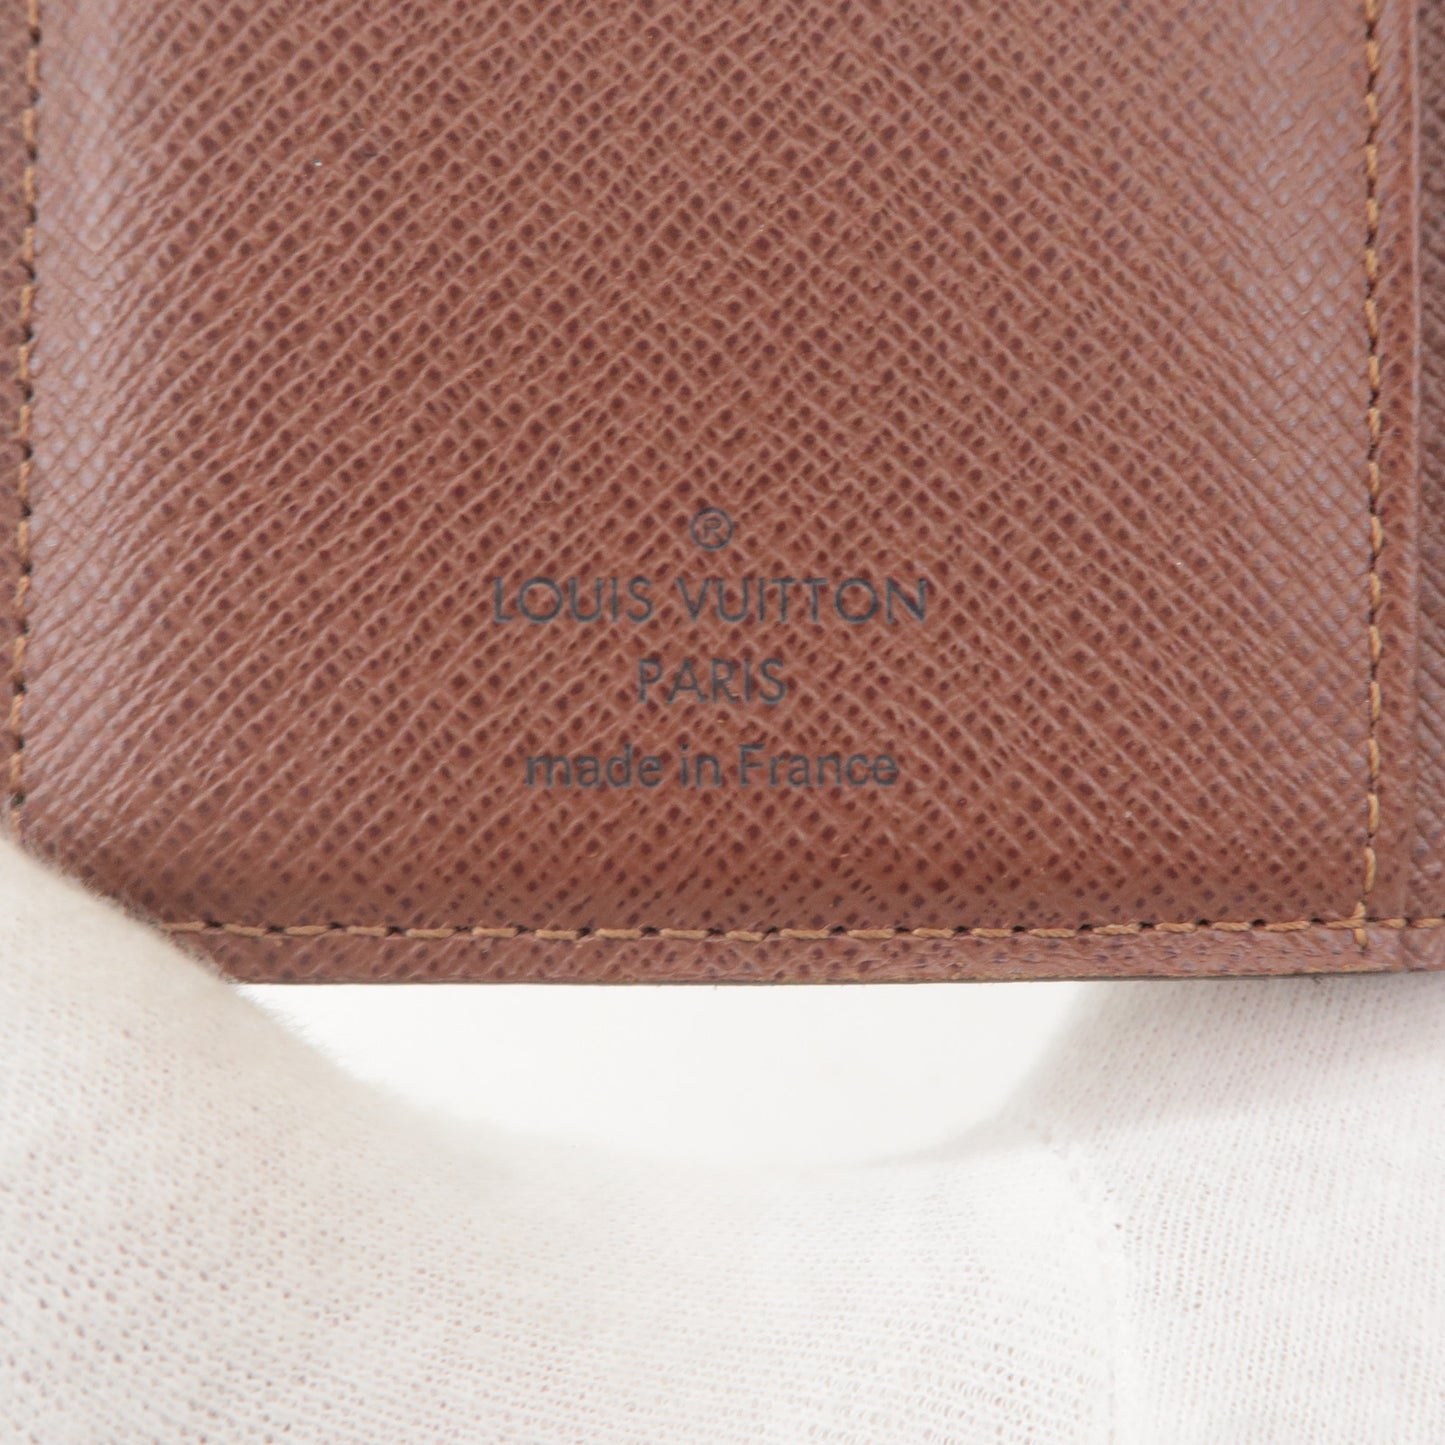 Louis Vuitton Monogram Portefeuille Viennois Wallet M61674